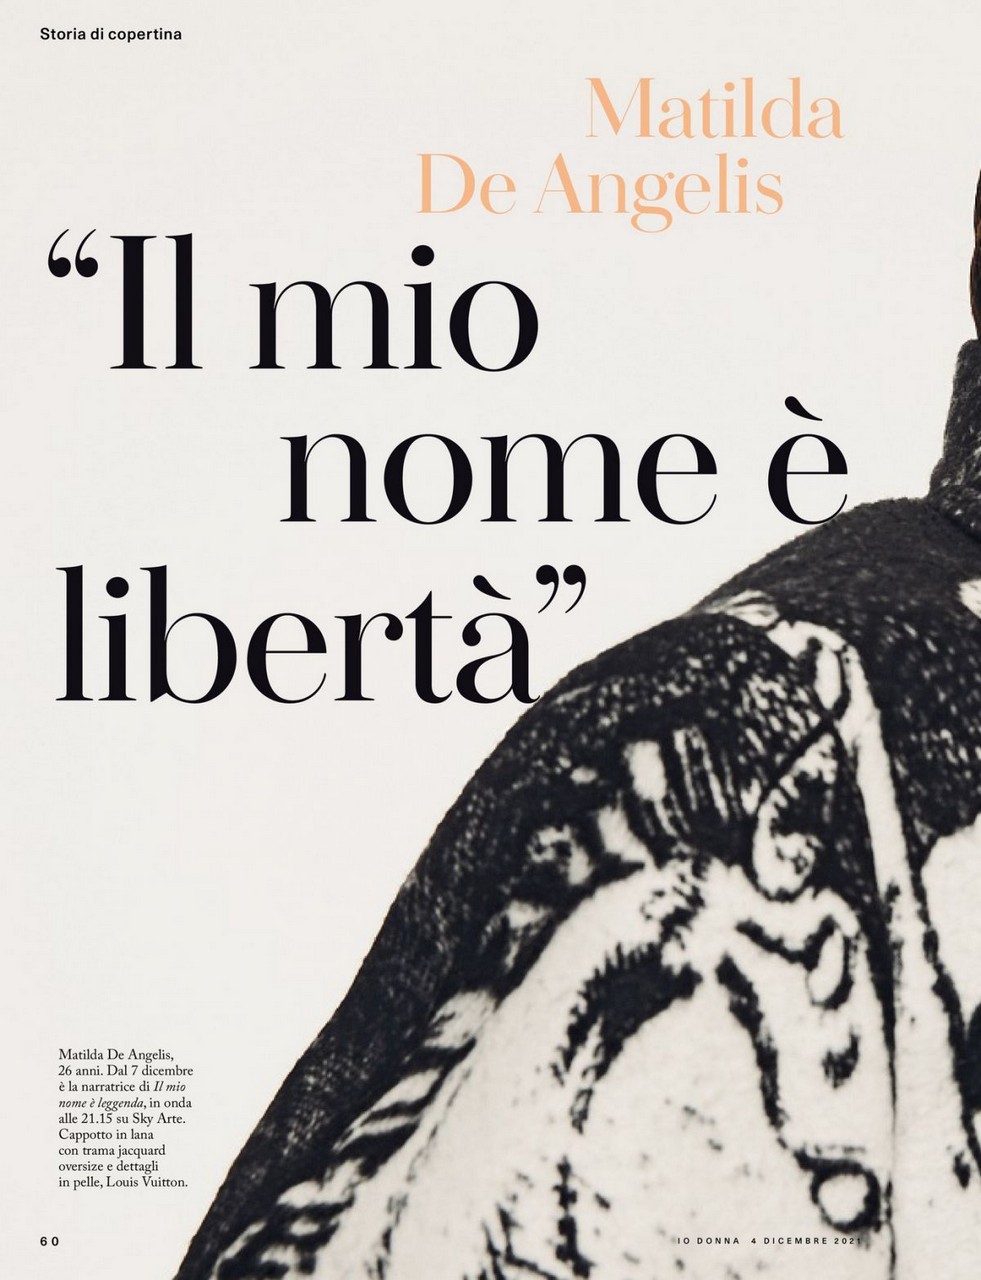 Matilda De Angelis Io Donna Del Corriere Della Sera December